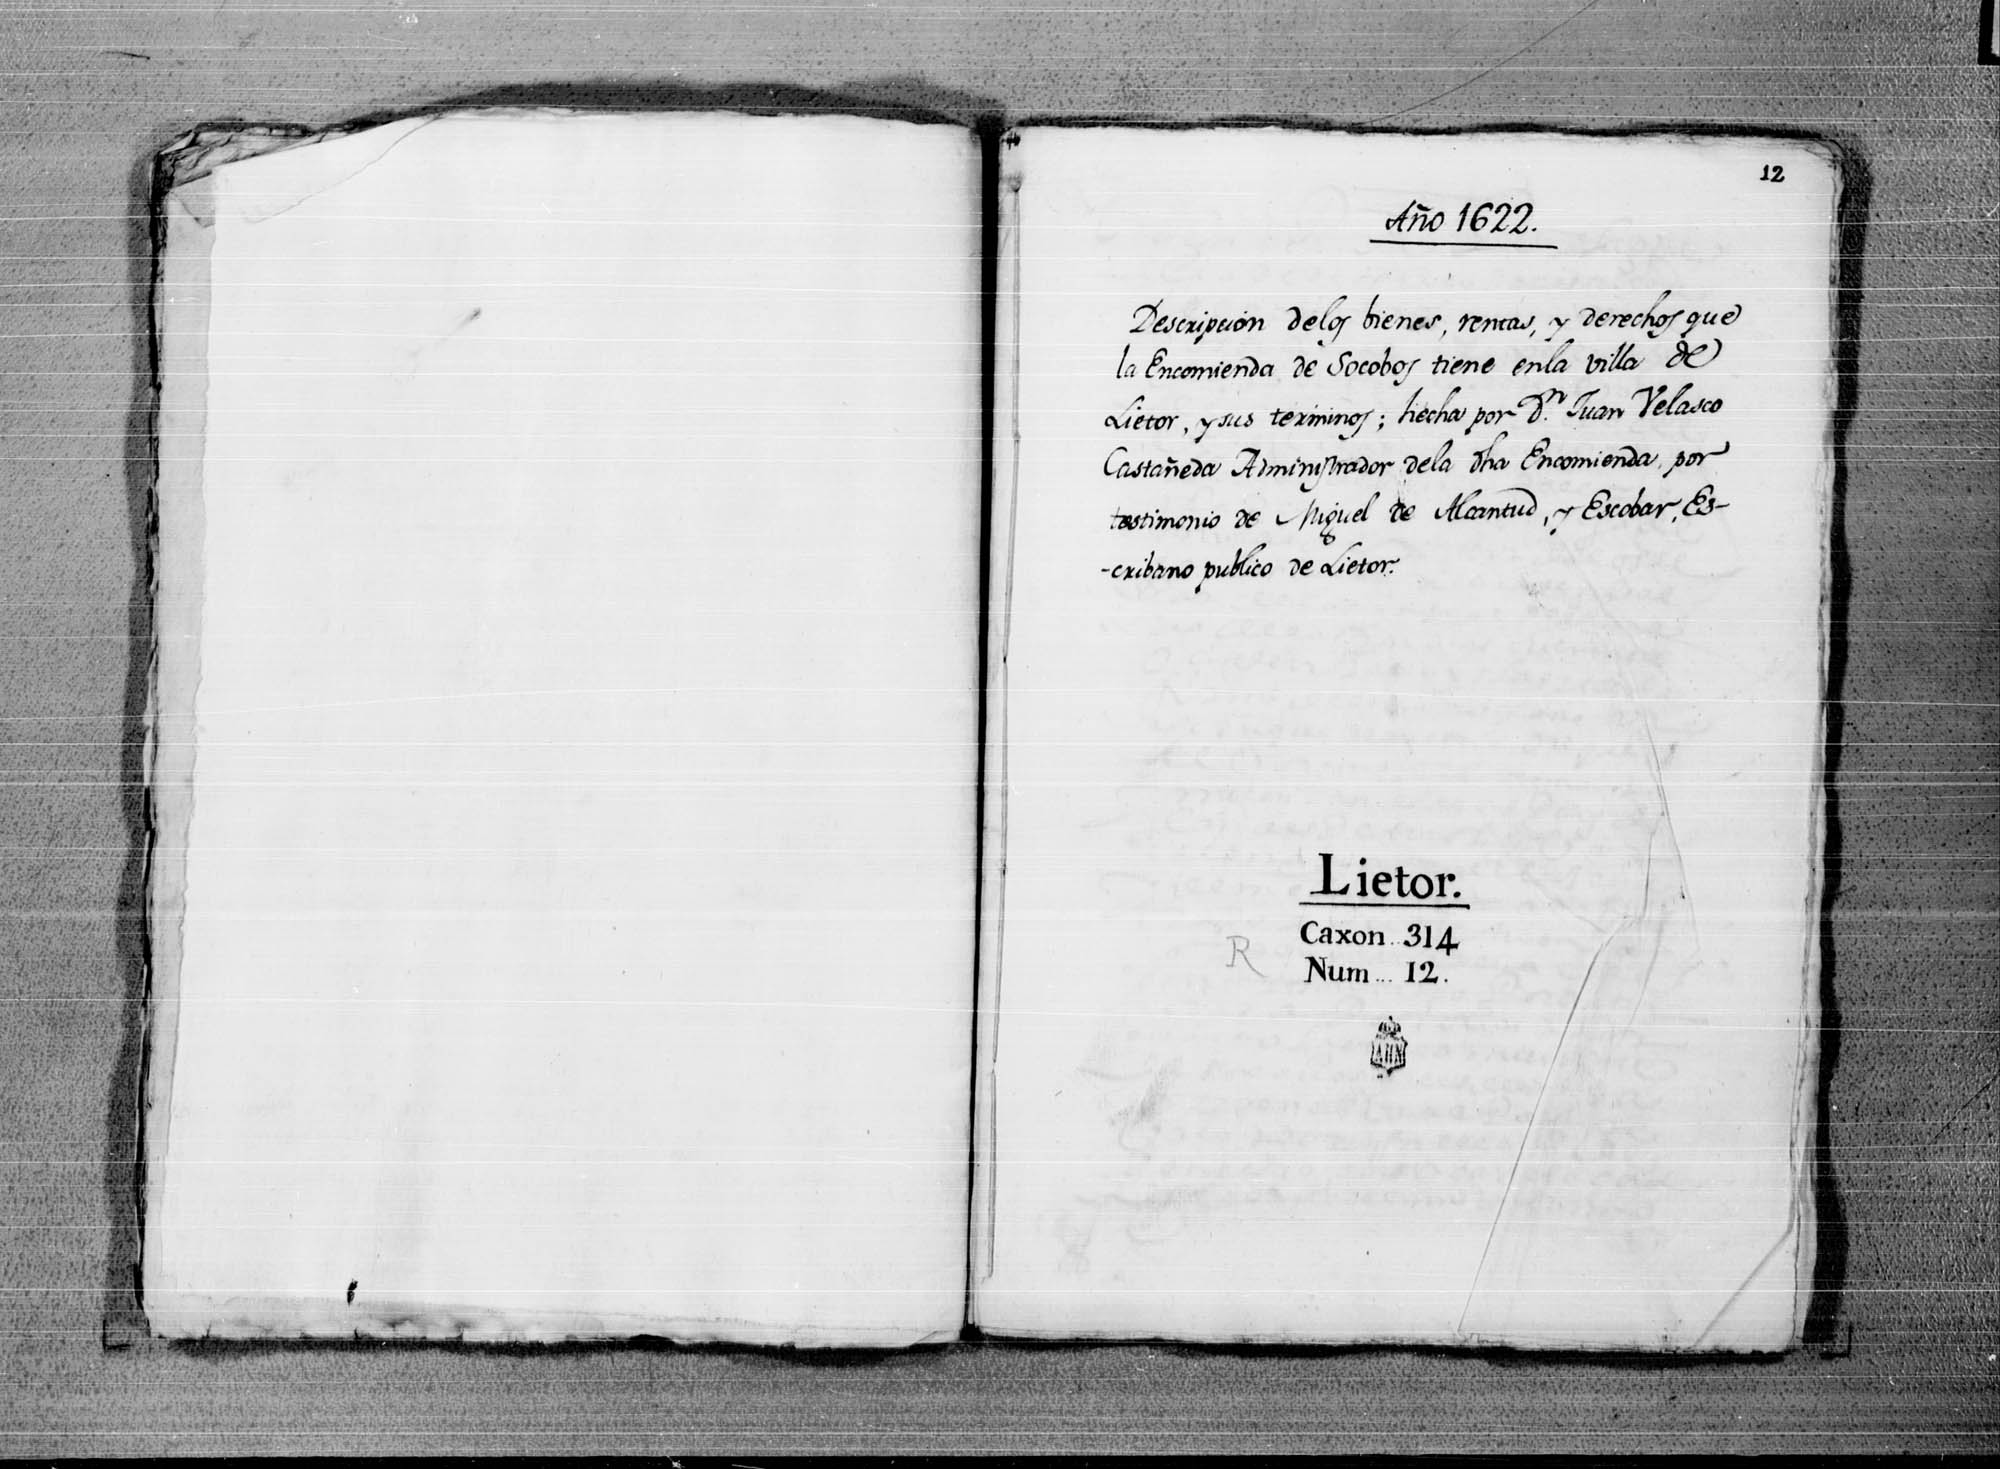 Traslado de la descripción de la villa de Liétor, de la encomienda de Socovos, realizada por orden de Juan de Velasco, administrador de la encomienda.